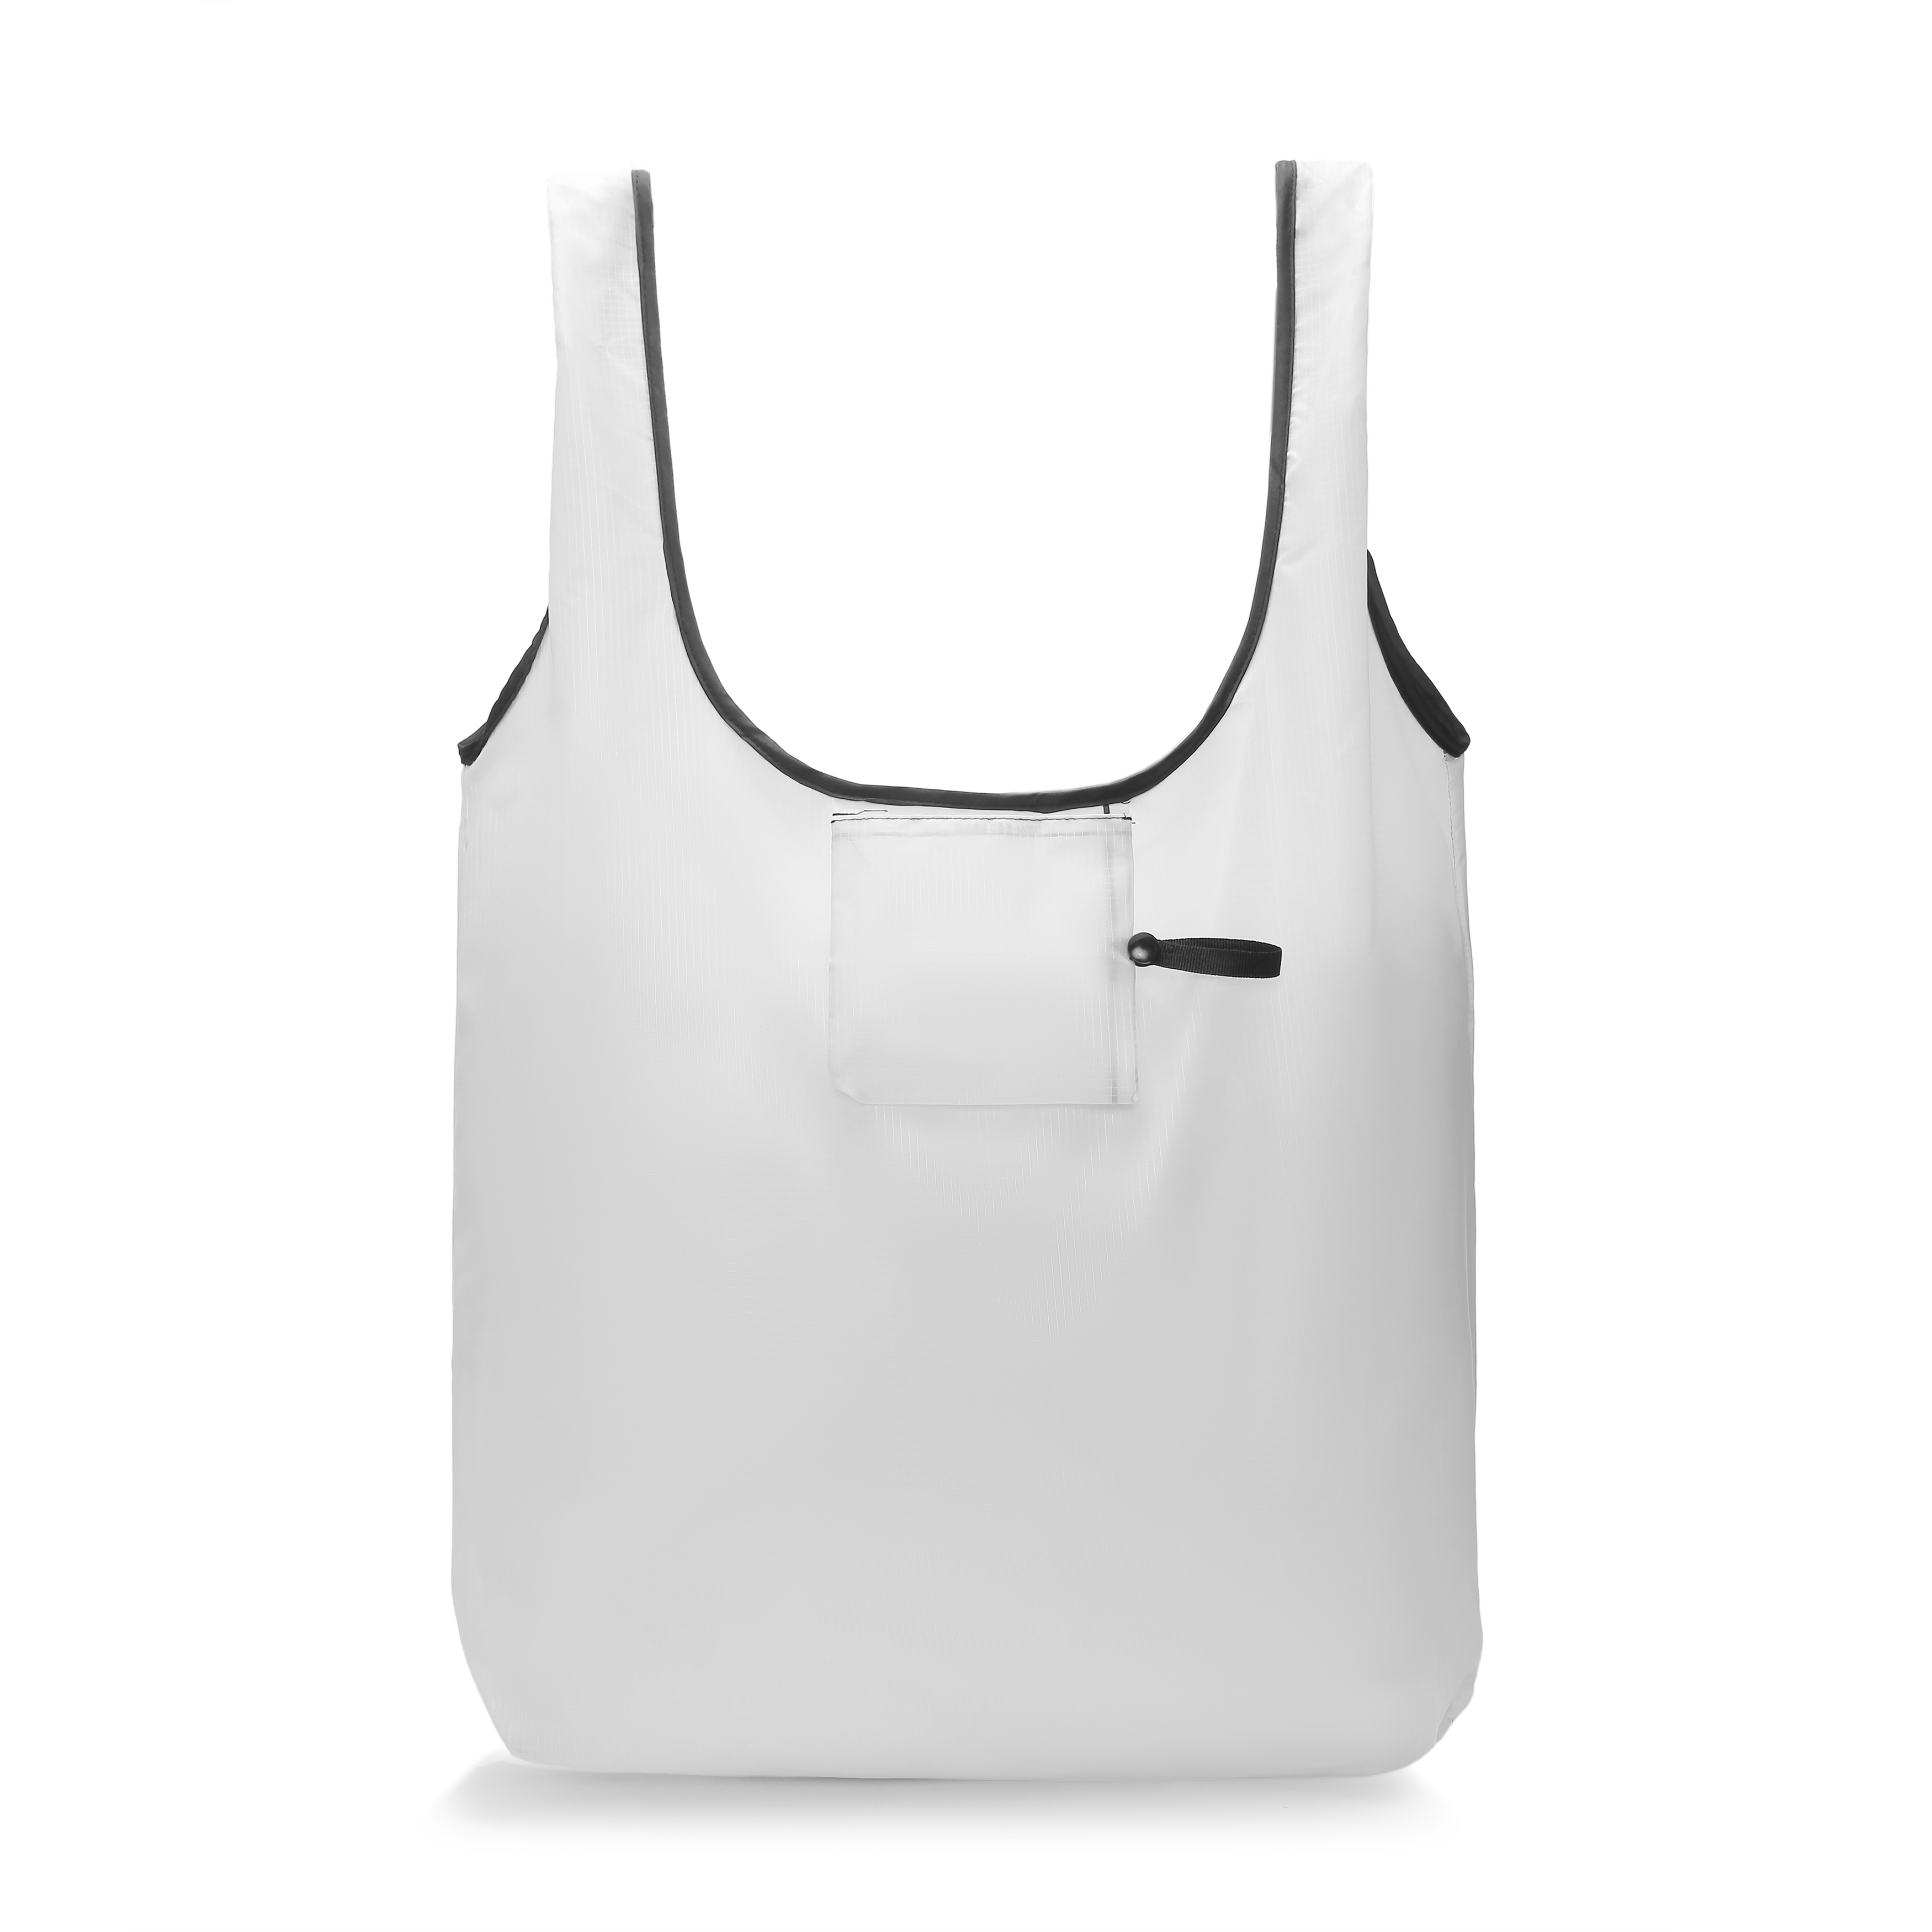 All-Over Print Foldable Shopping Bag | Print On Demand-1